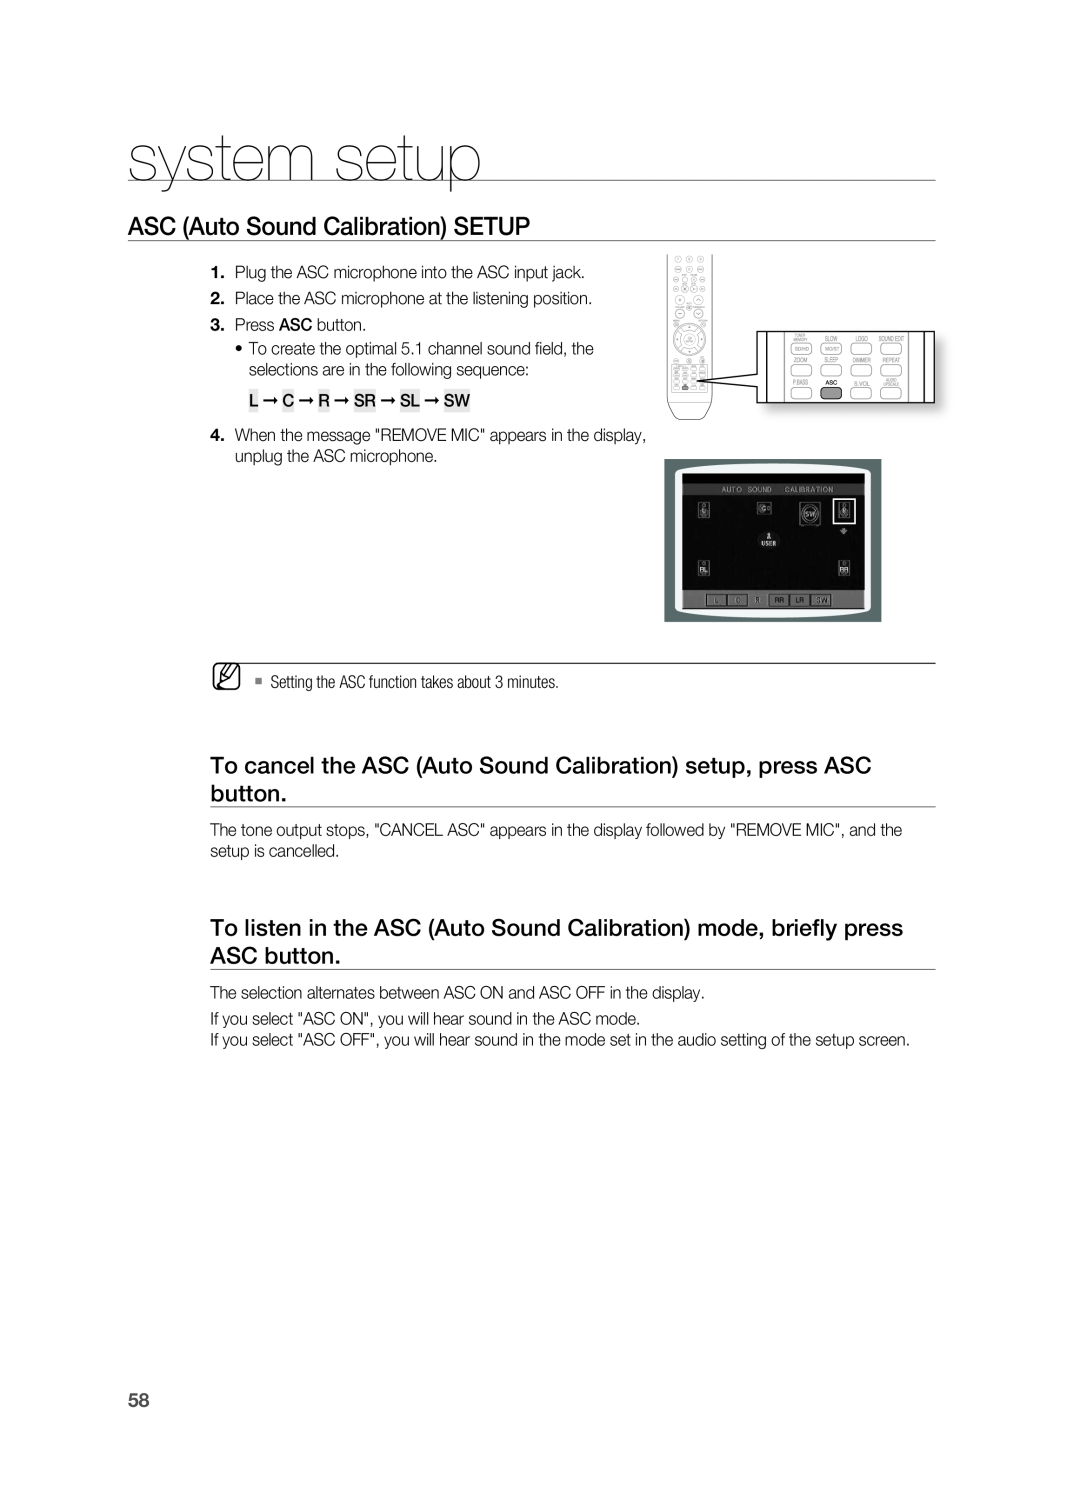 Samsung HT-TX715 user manual system setup, ASC Auto Sound Calibration SETUP, L C r Sr SL SW 